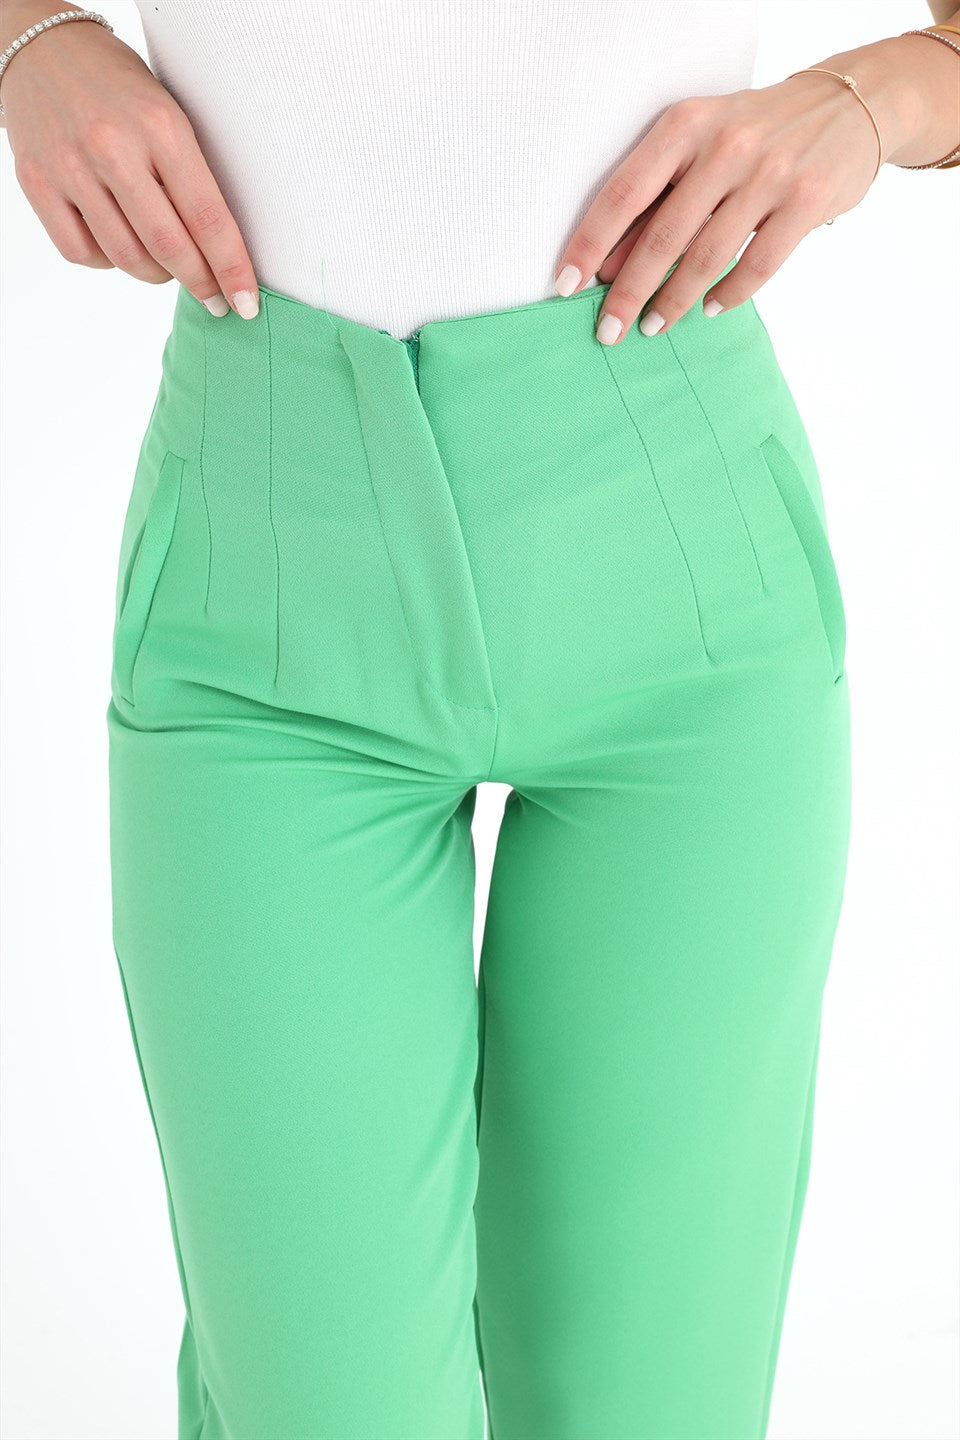 Women's High Waist Collared Atlas Fabric Trousers - Light Green - STREETMODE ™